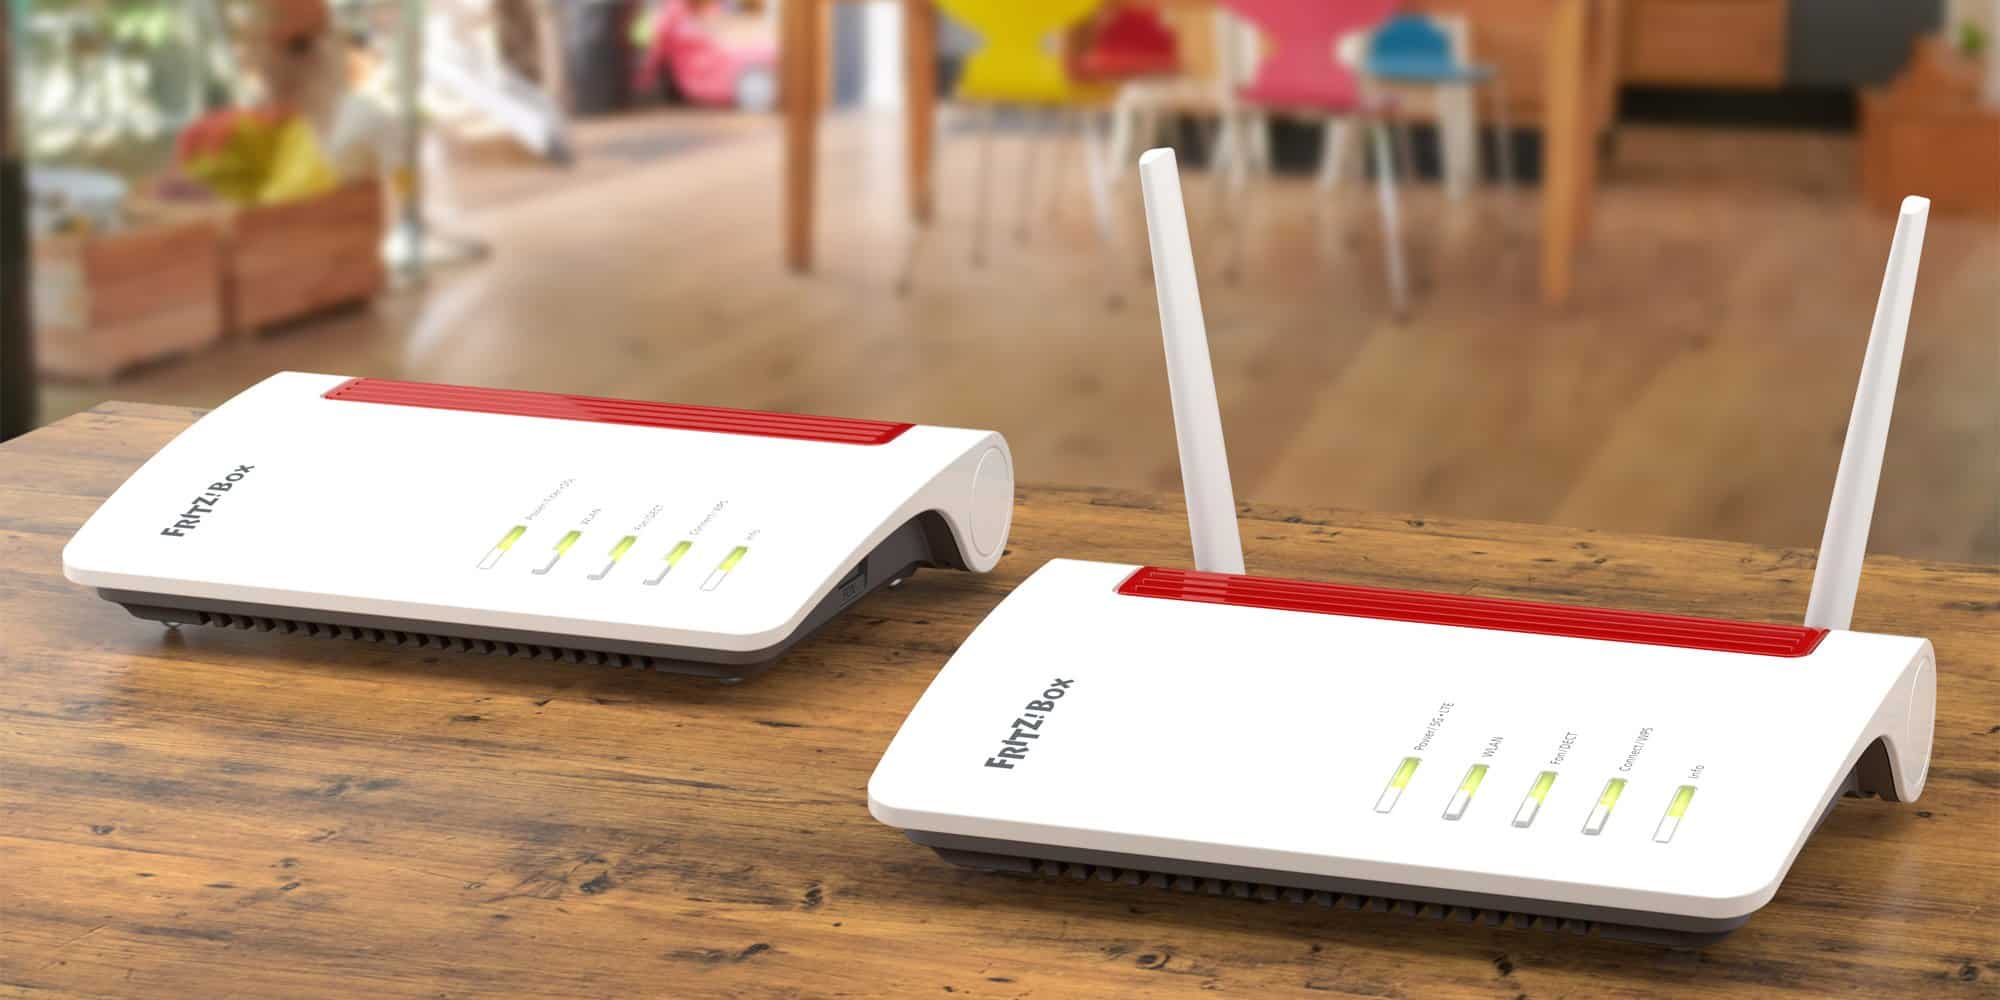 Wi-Fi 6, 5G, Smart Home: Zur IFA 2019 stellt AVM sechs neue FRITZ!-Produkte vor